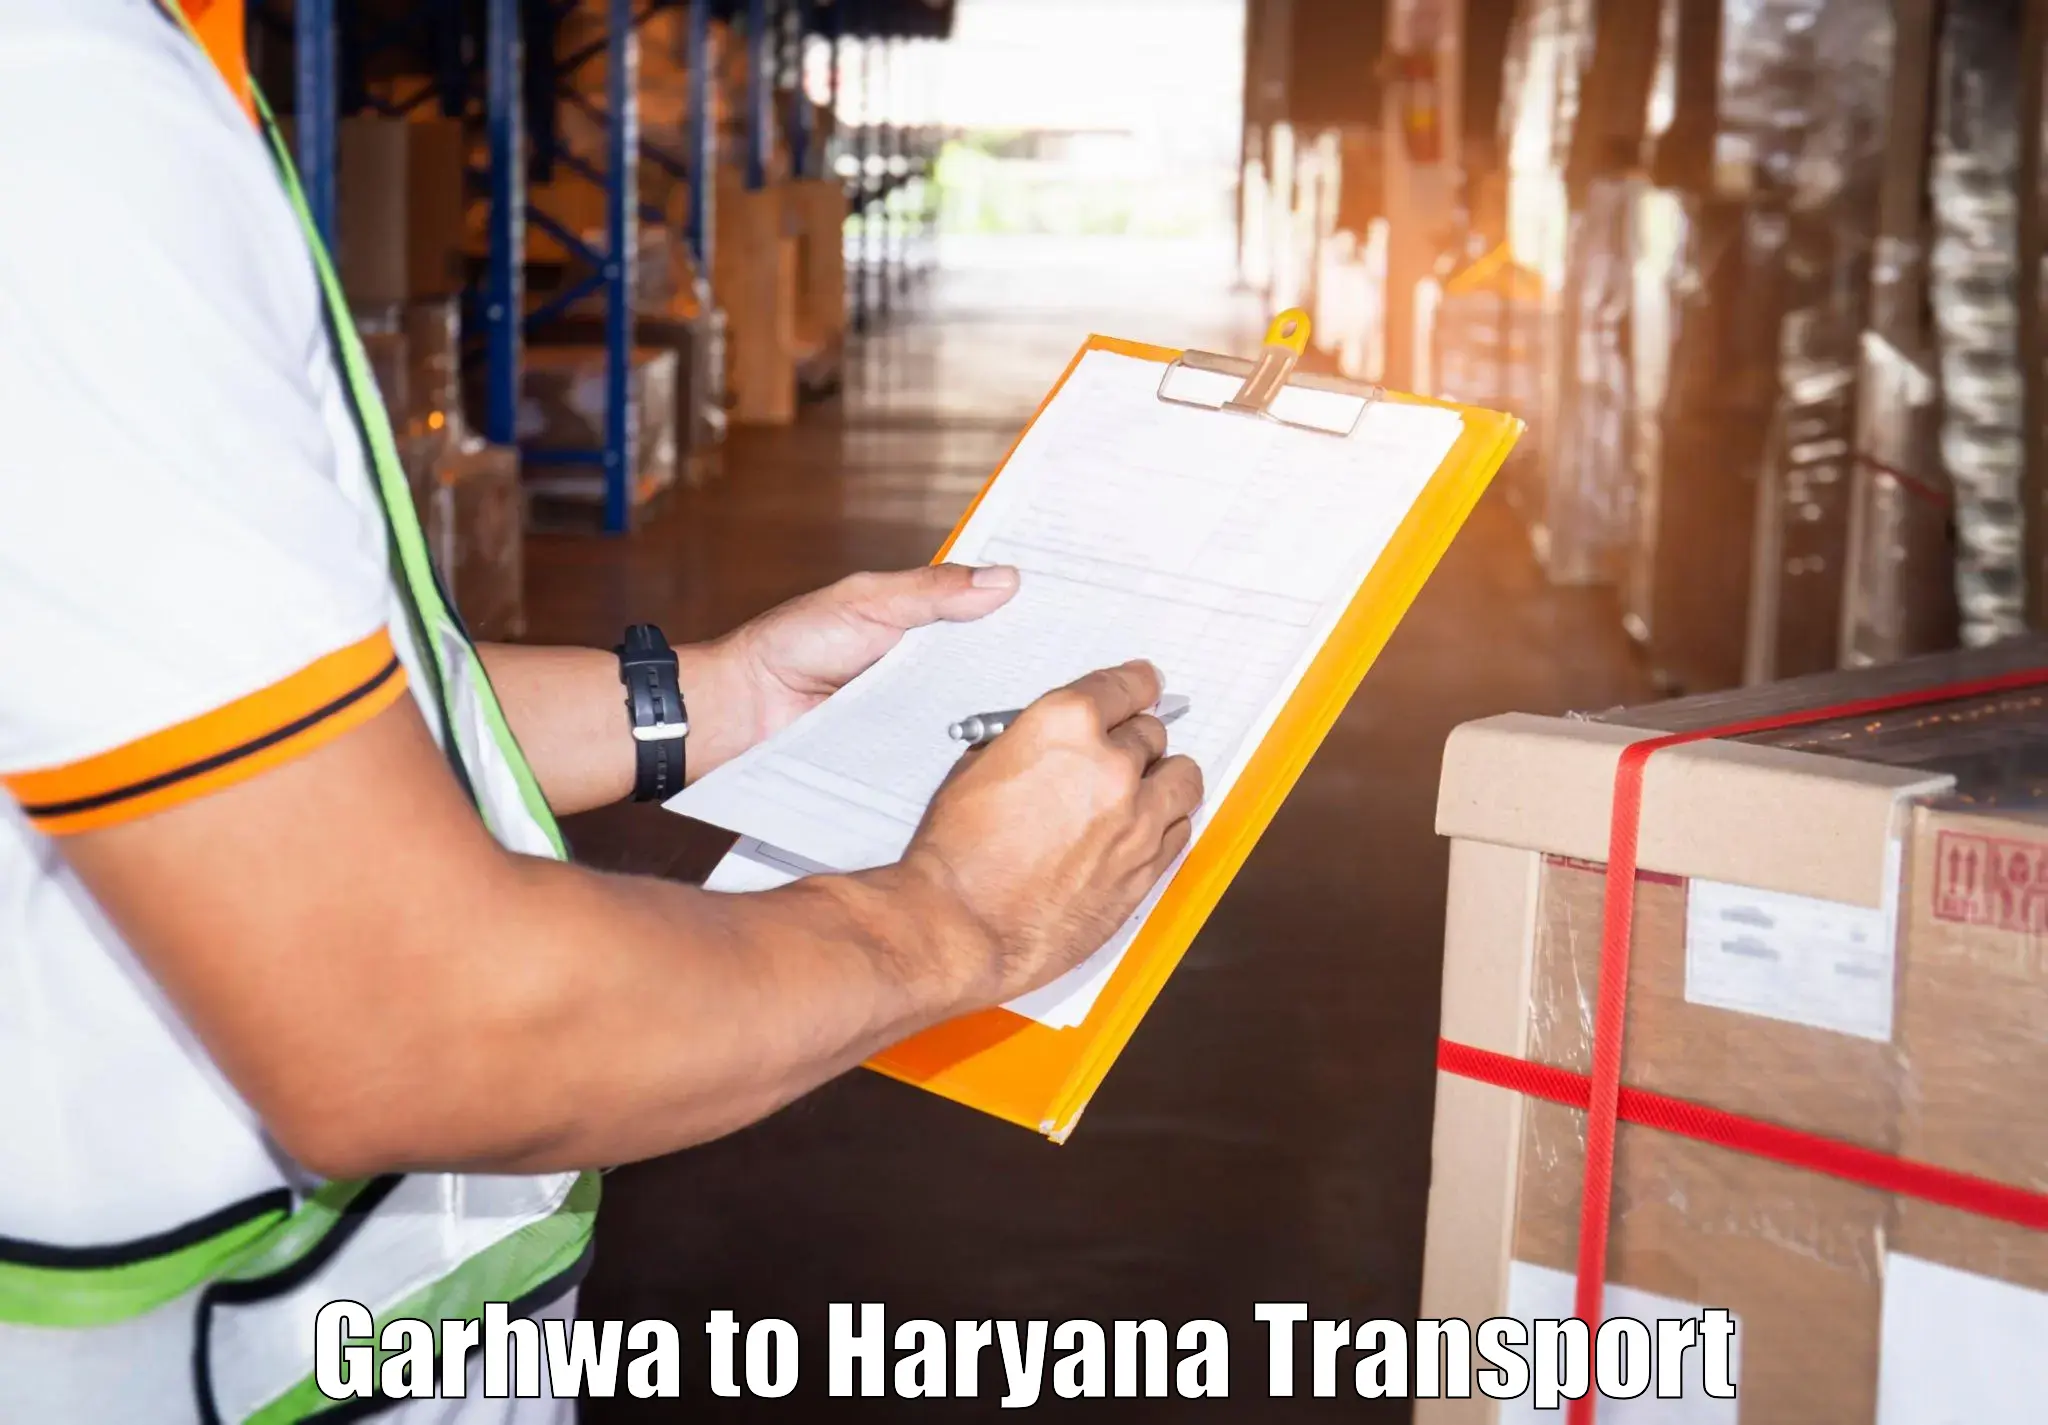 Cargo transport services Garhwa to Loharu